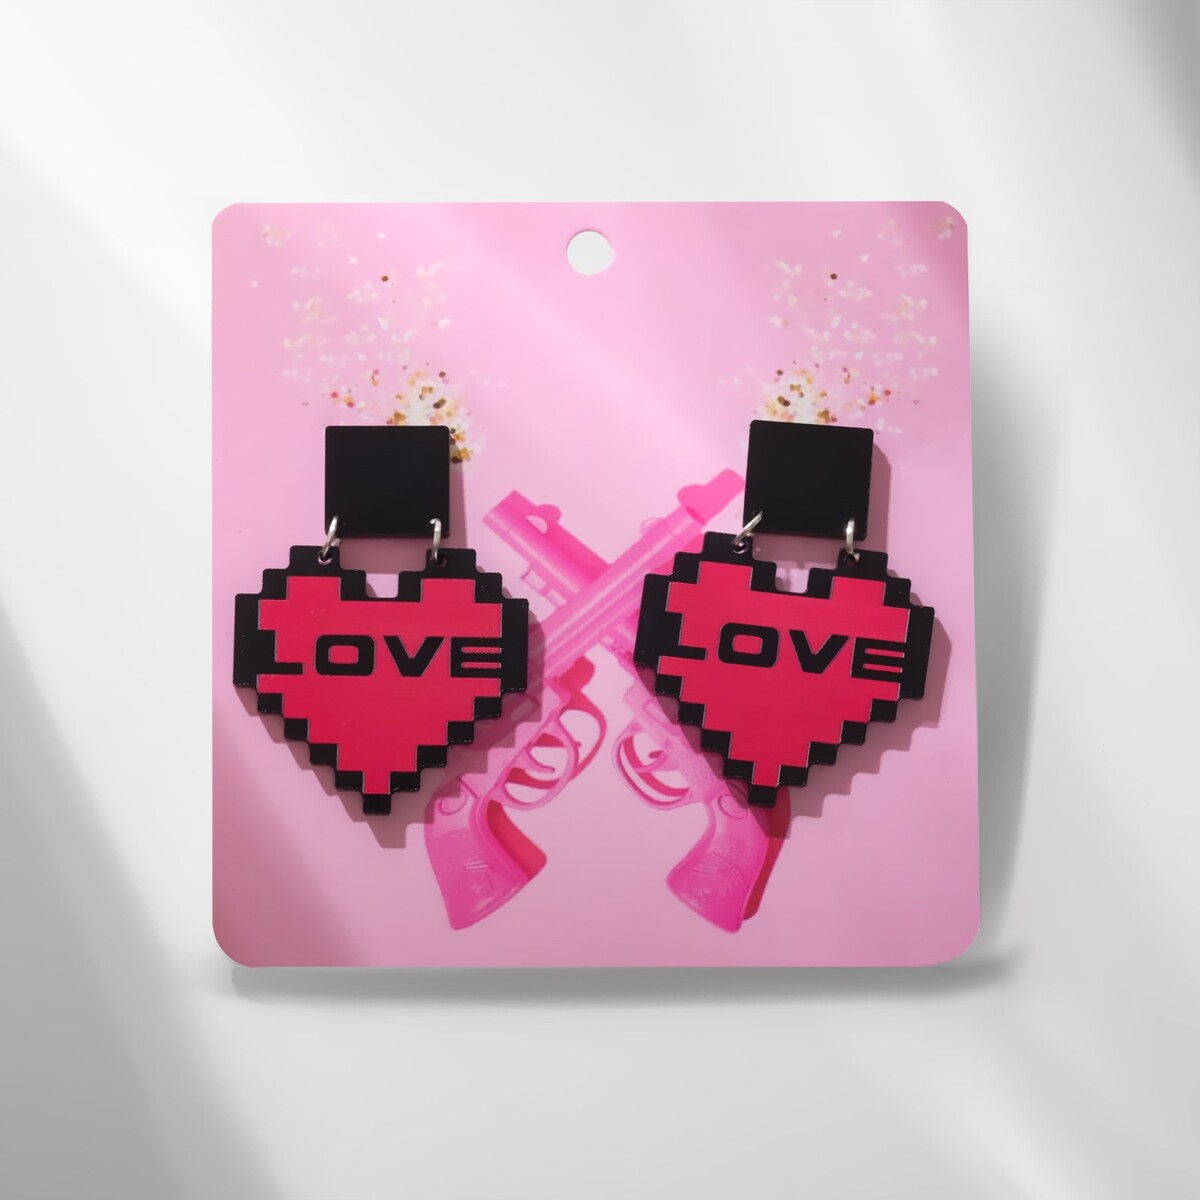 Серьги акрил one love, цвет черно-розовый в серебре Queen fair 03188796:  купить за 190 руб в интернет магазине с бесплатной доставкой